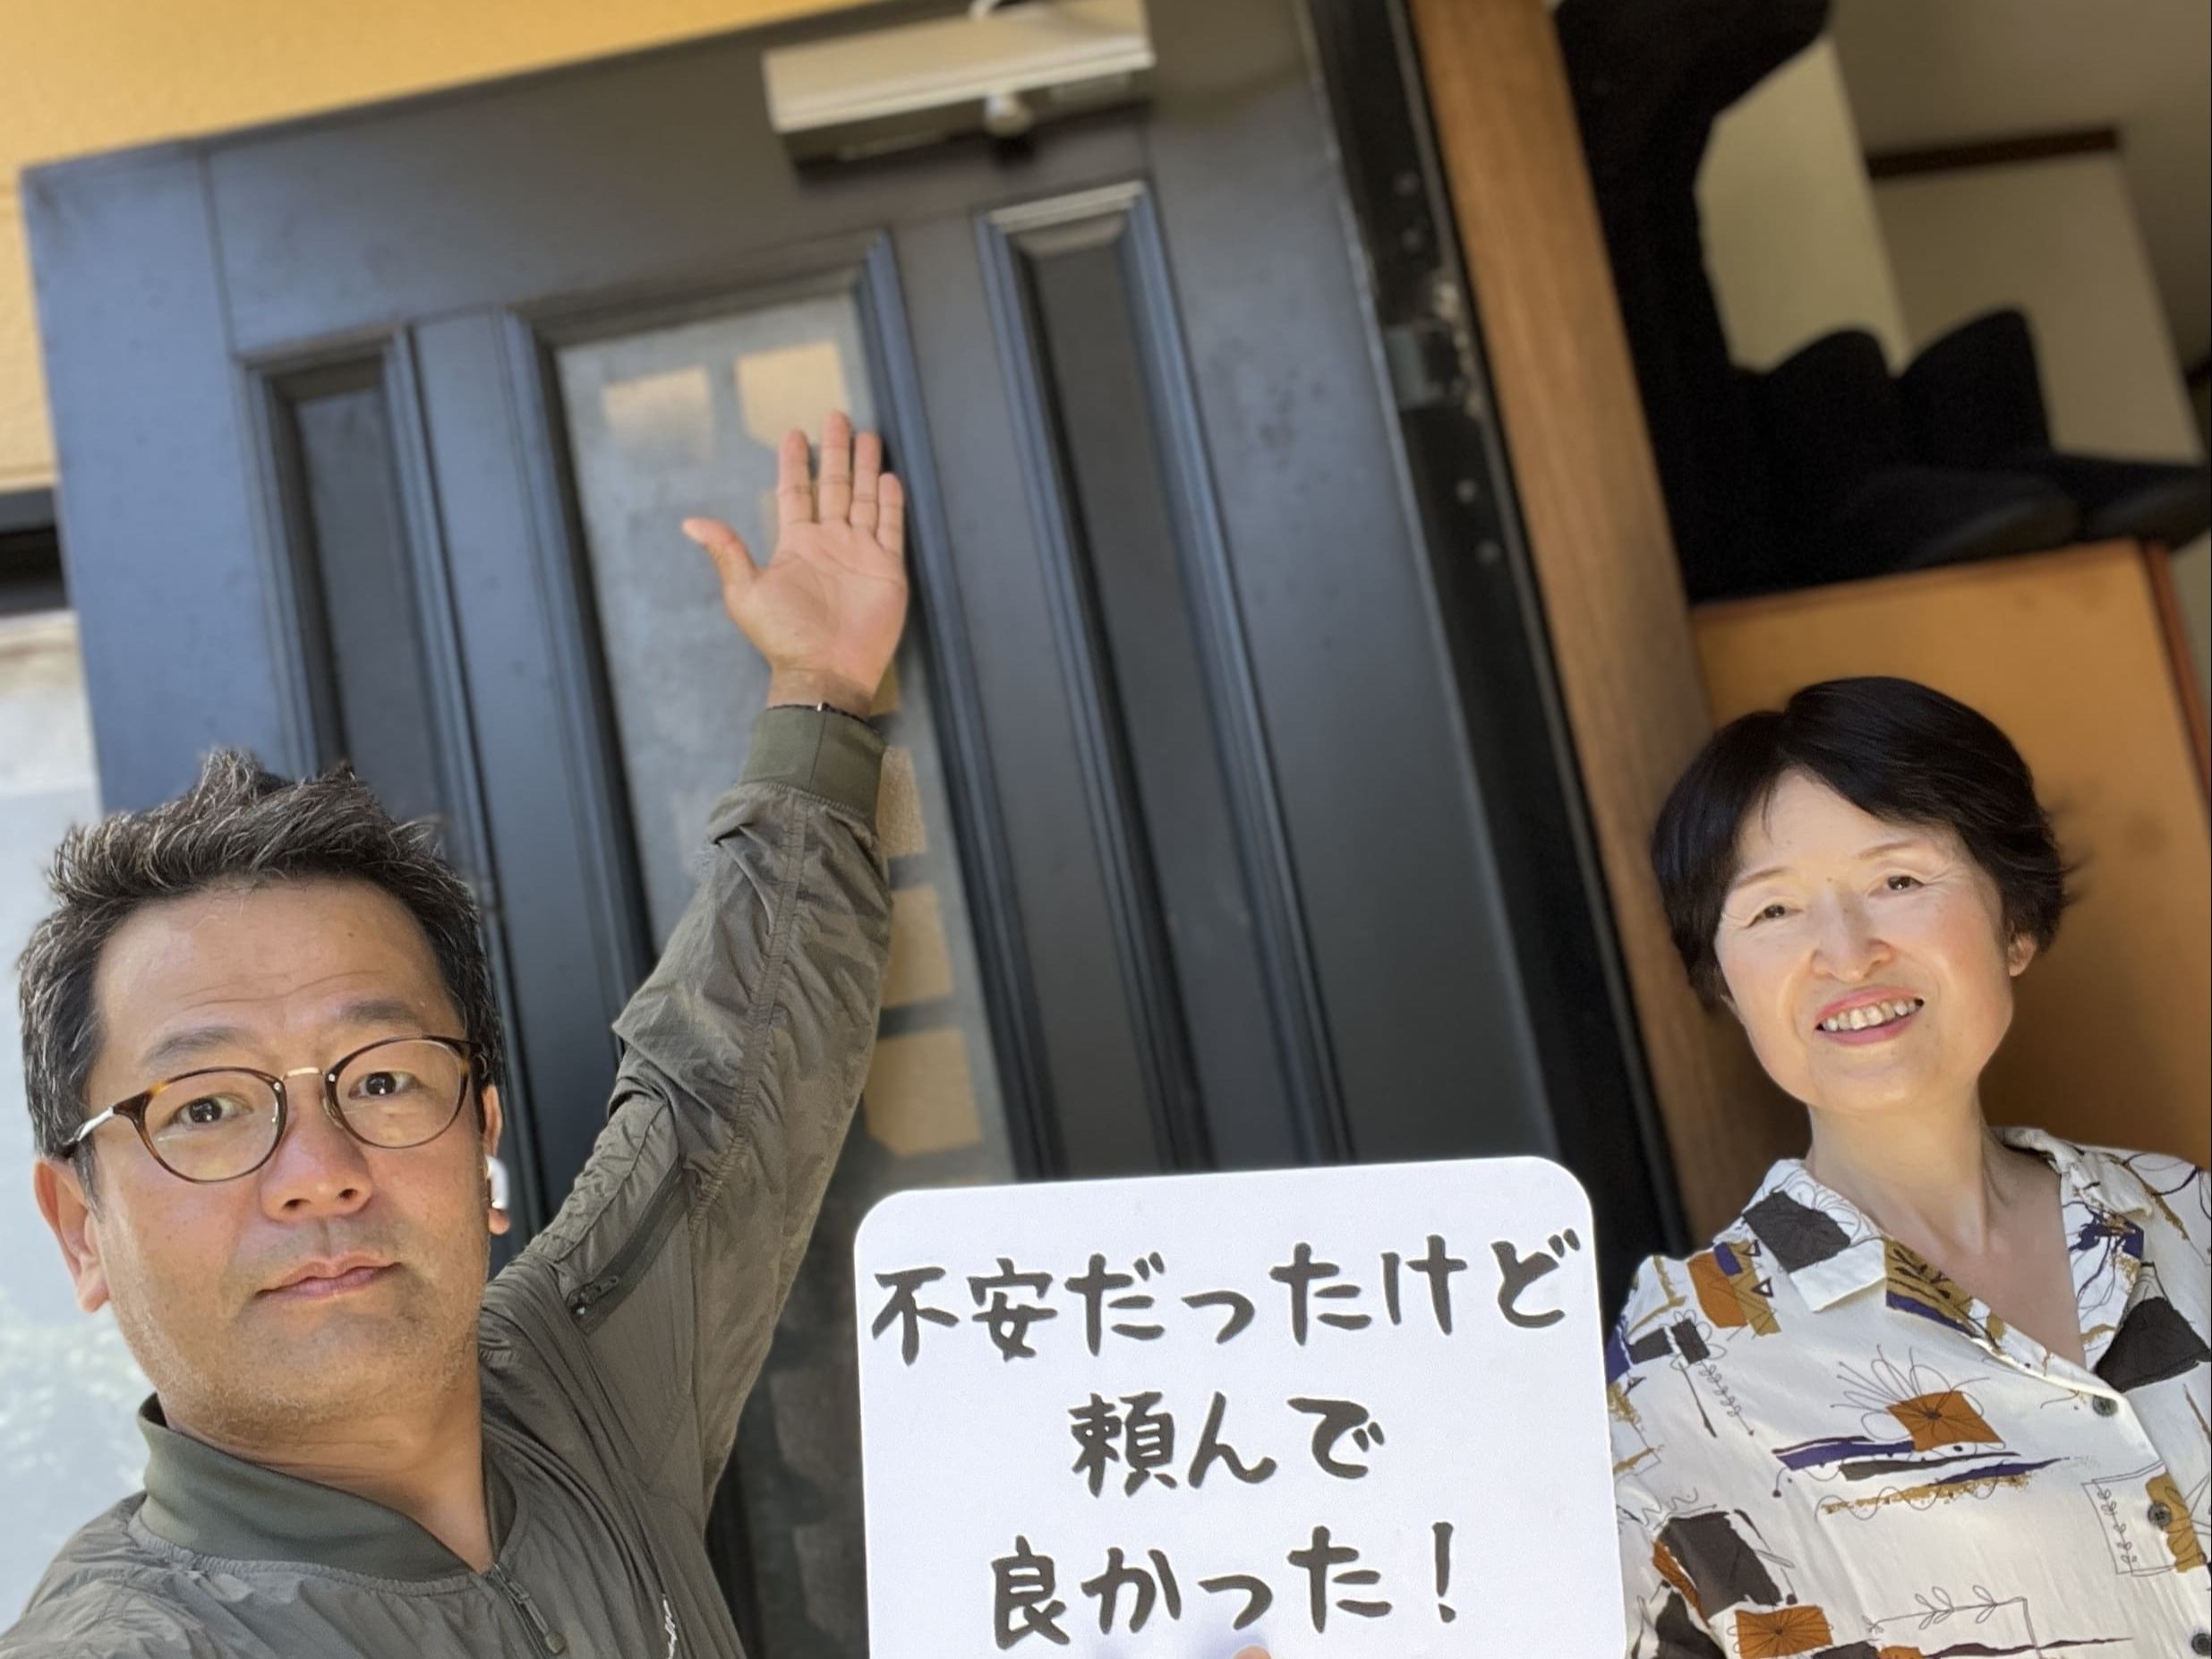 【大田区地域】カギとドア修理コバヤシの店内・外観画像3